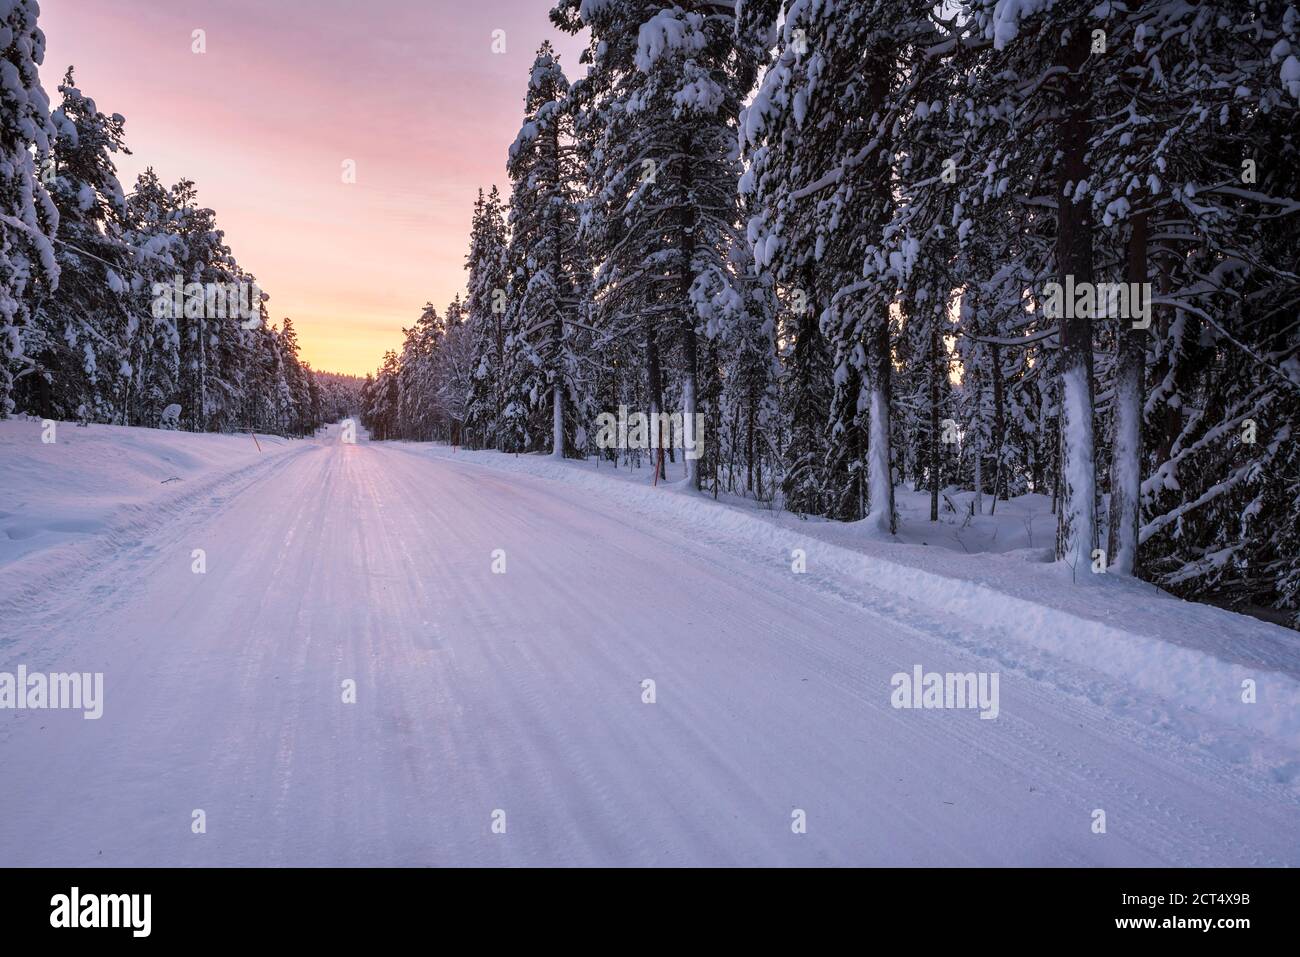 Routes hivernales dangereuses et verglacées en conditions de conduite par temps froid en Laponie, Finlande, Europe, sur chaussée glissante, verglacée ou enneigée Banque D'Images